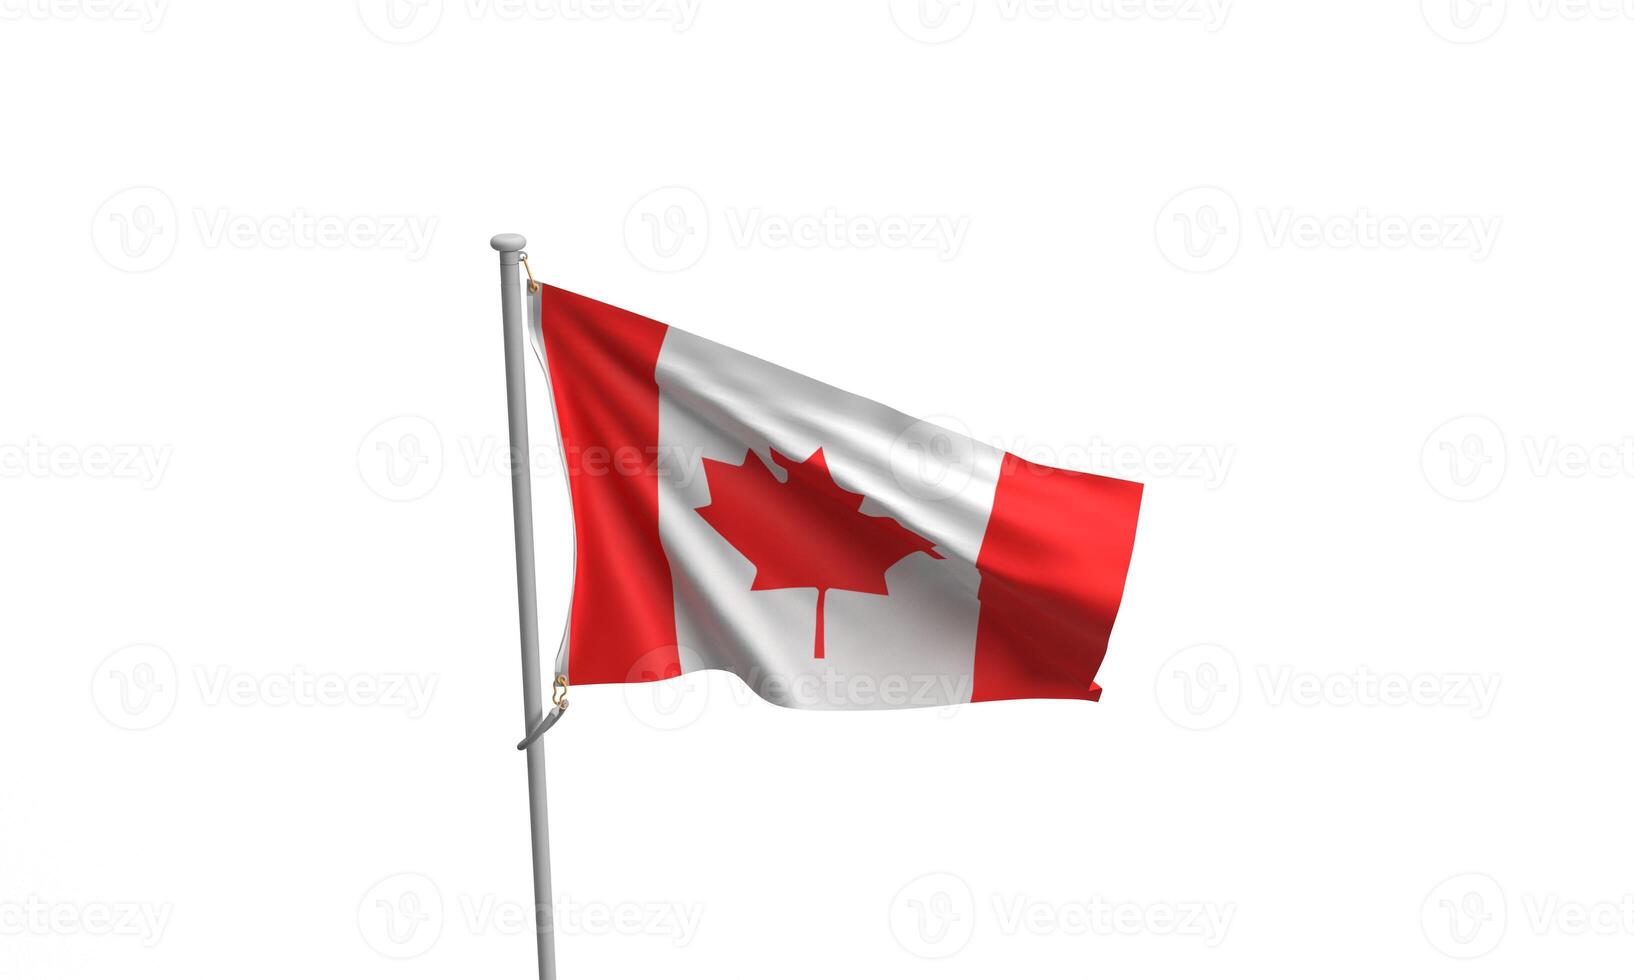 Canadá bandera fiesta celebracion rojo blanco arce árbol hoja blanco rojo color canadiense persona personas fiesta evento 1 primero S t julio mes evento póster firmar festival Canadá monumento orgullo historia Canadá foto